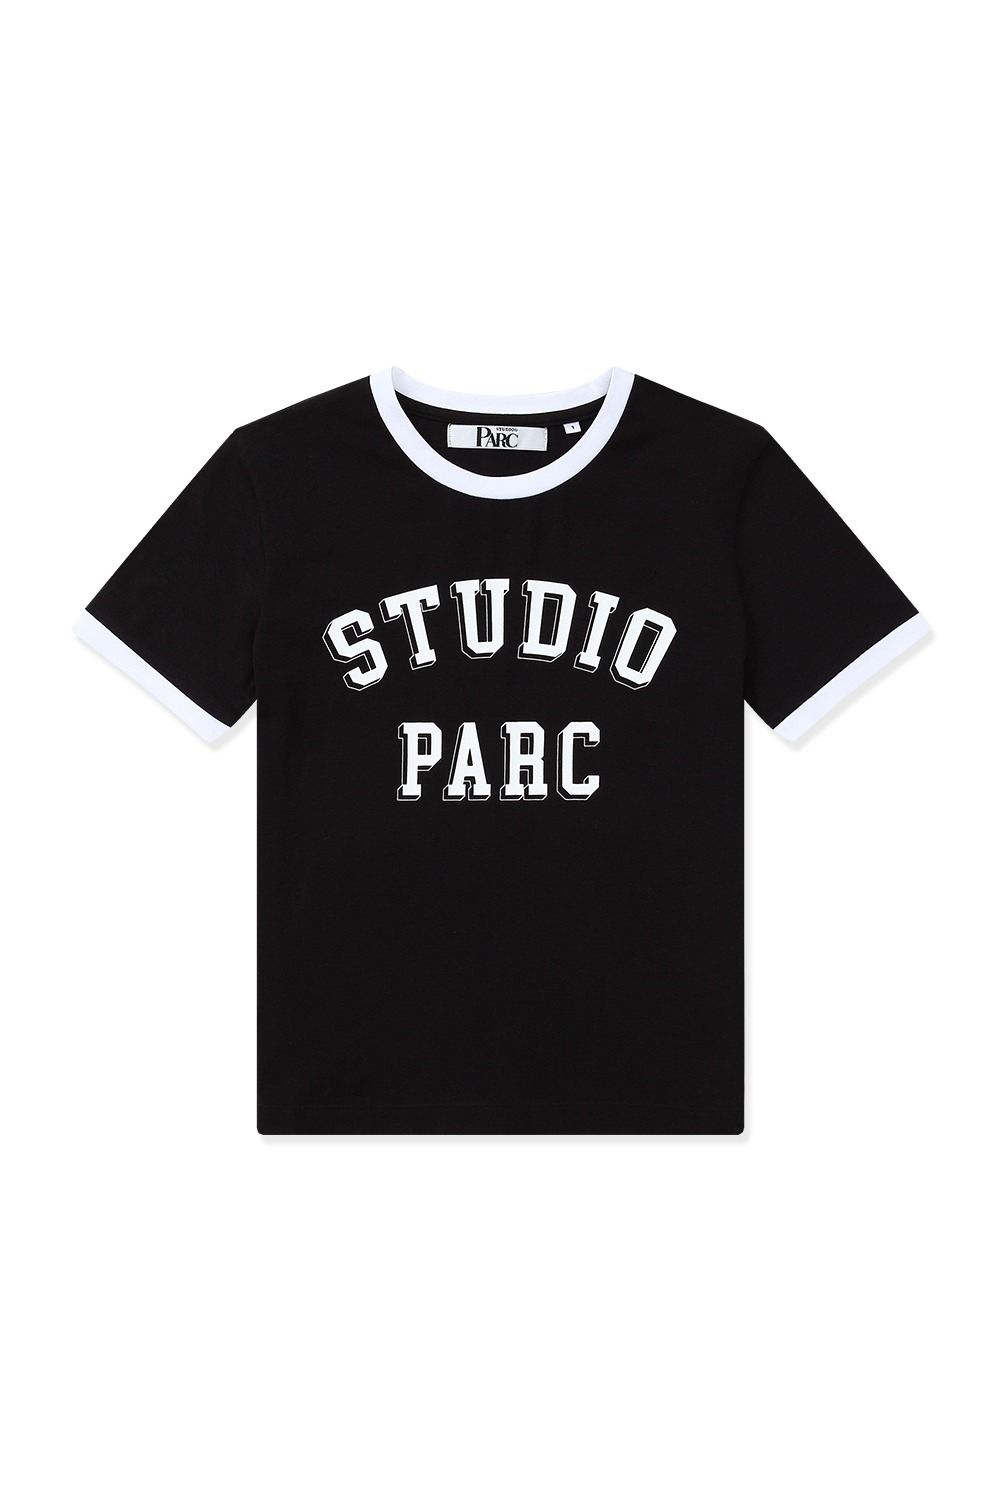 스튜디오파르크 링거 티셔츠 (블랙) - 리치즈 RICHEZ